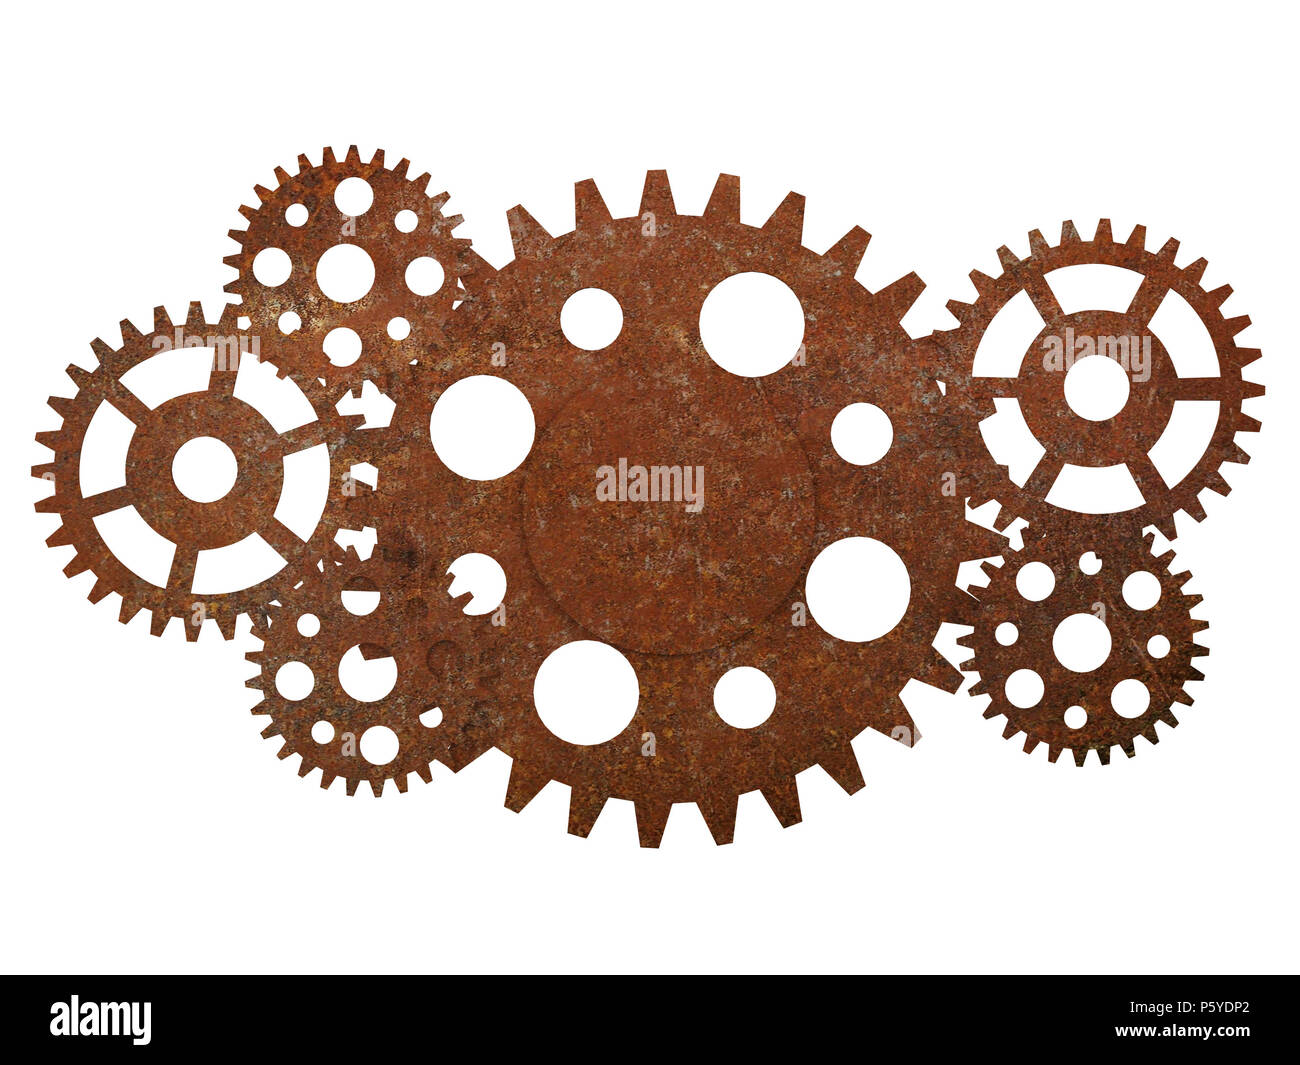 Metall Getriebe und Zahnräder Hintergrund Stockfotografie - Alamy